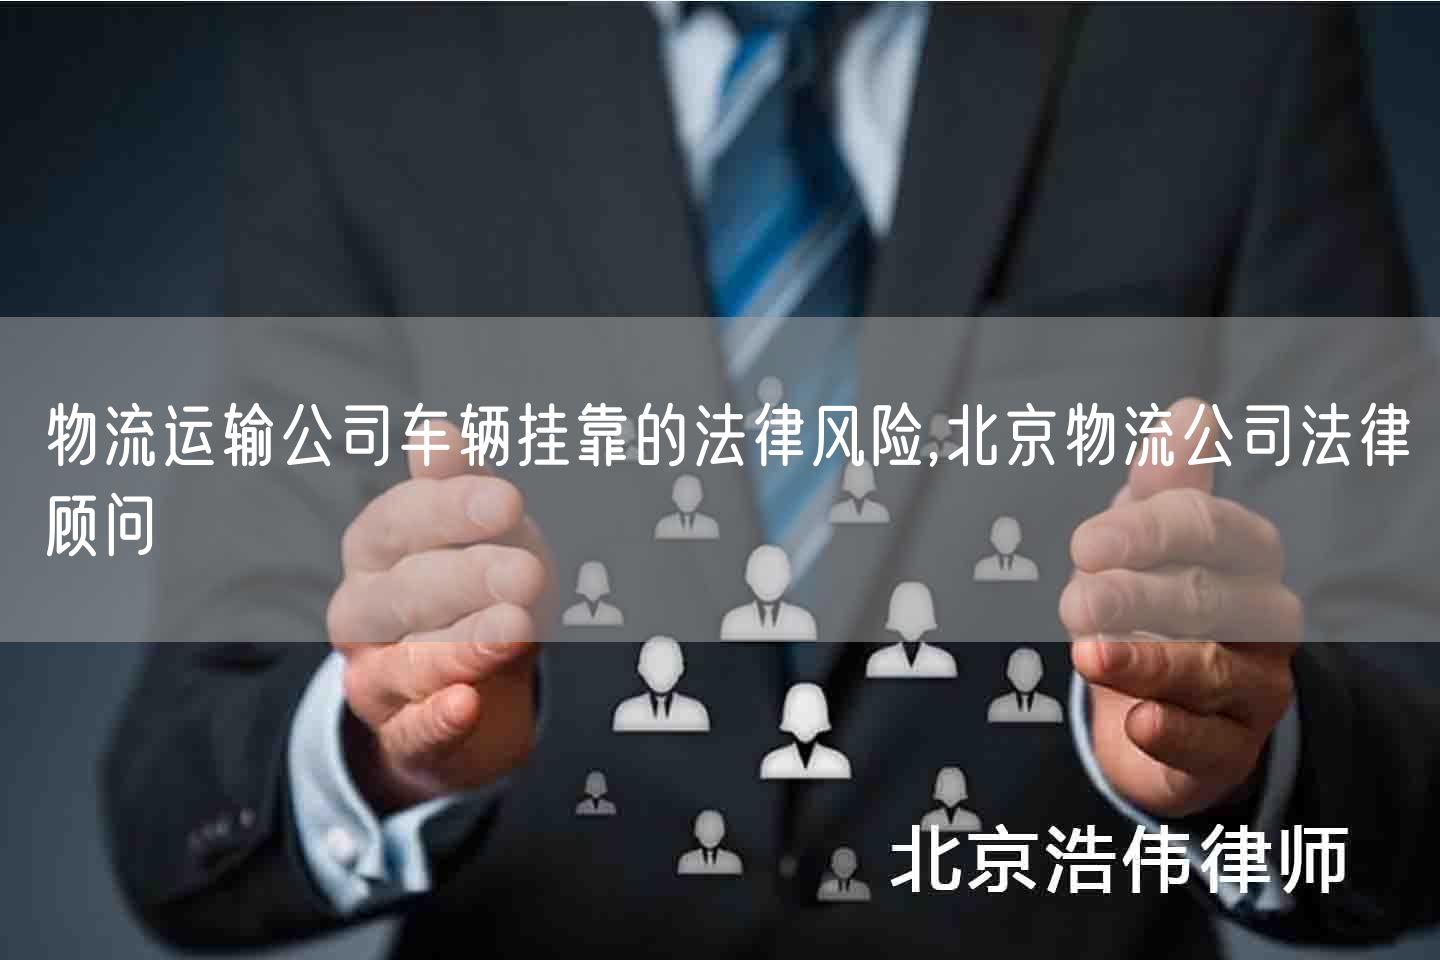 物流运输公司车辆挂靠的法律风险,北京物流公司法律顾问